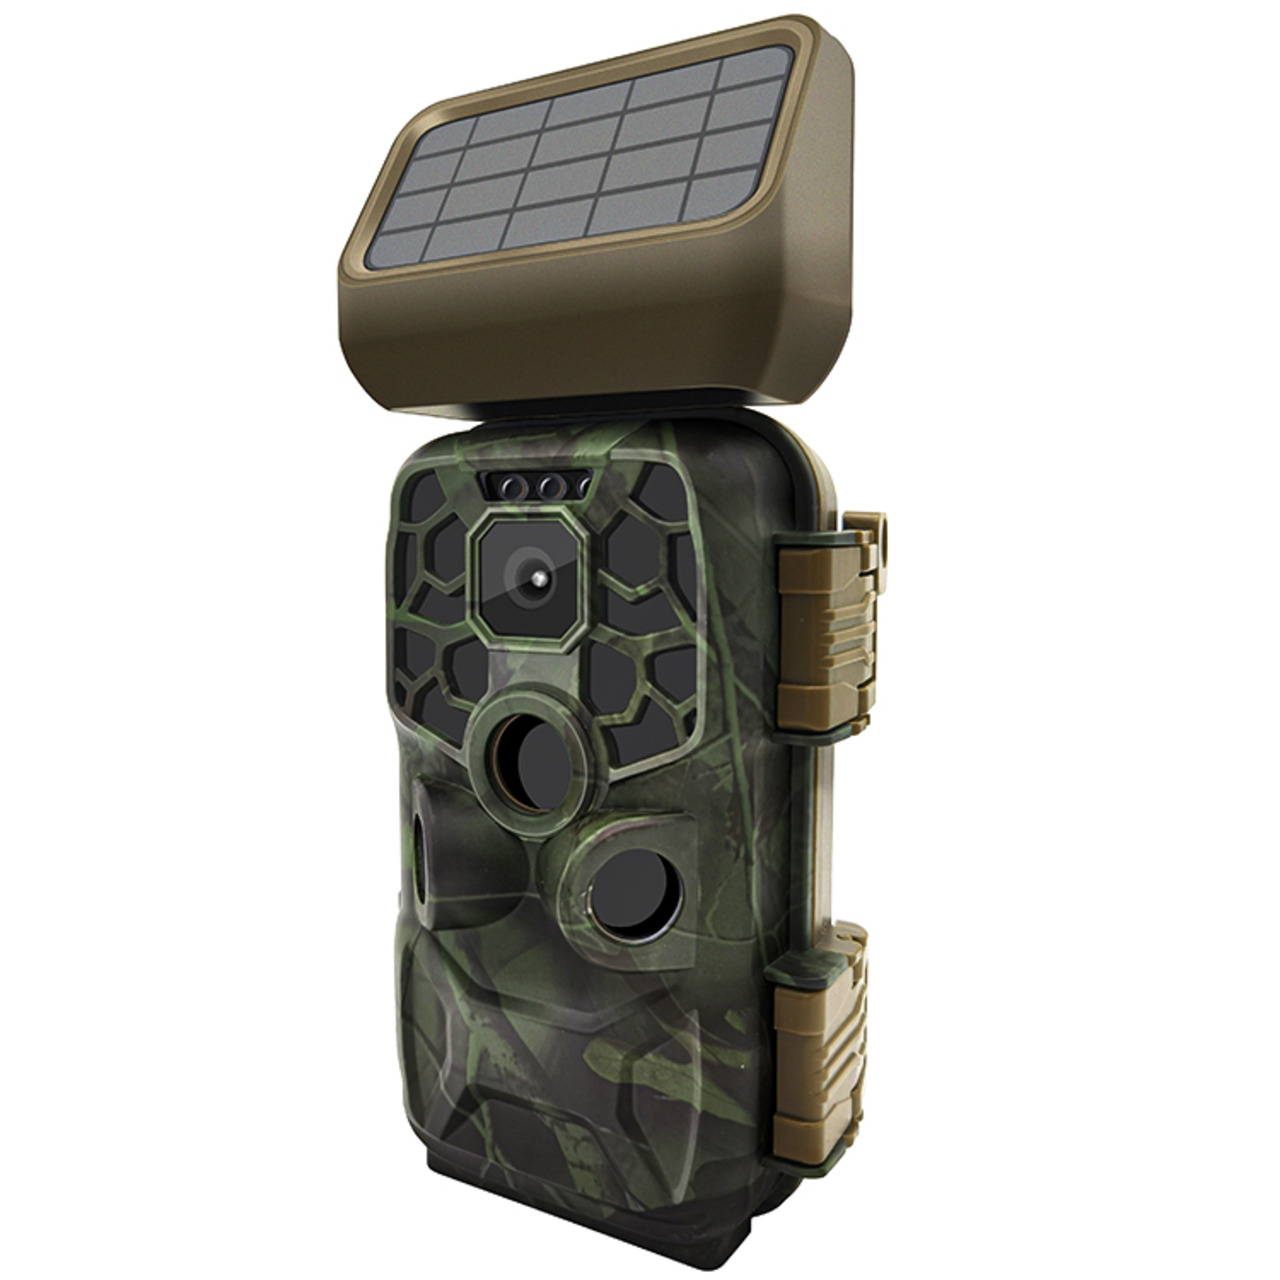 Braun Fotofalle - Wildkamera Scouting Cam BLACK400 WiFi SOLAR- 24 MP- IP56- Auslösezeit 0-4s  unter Sicherheitstechnik